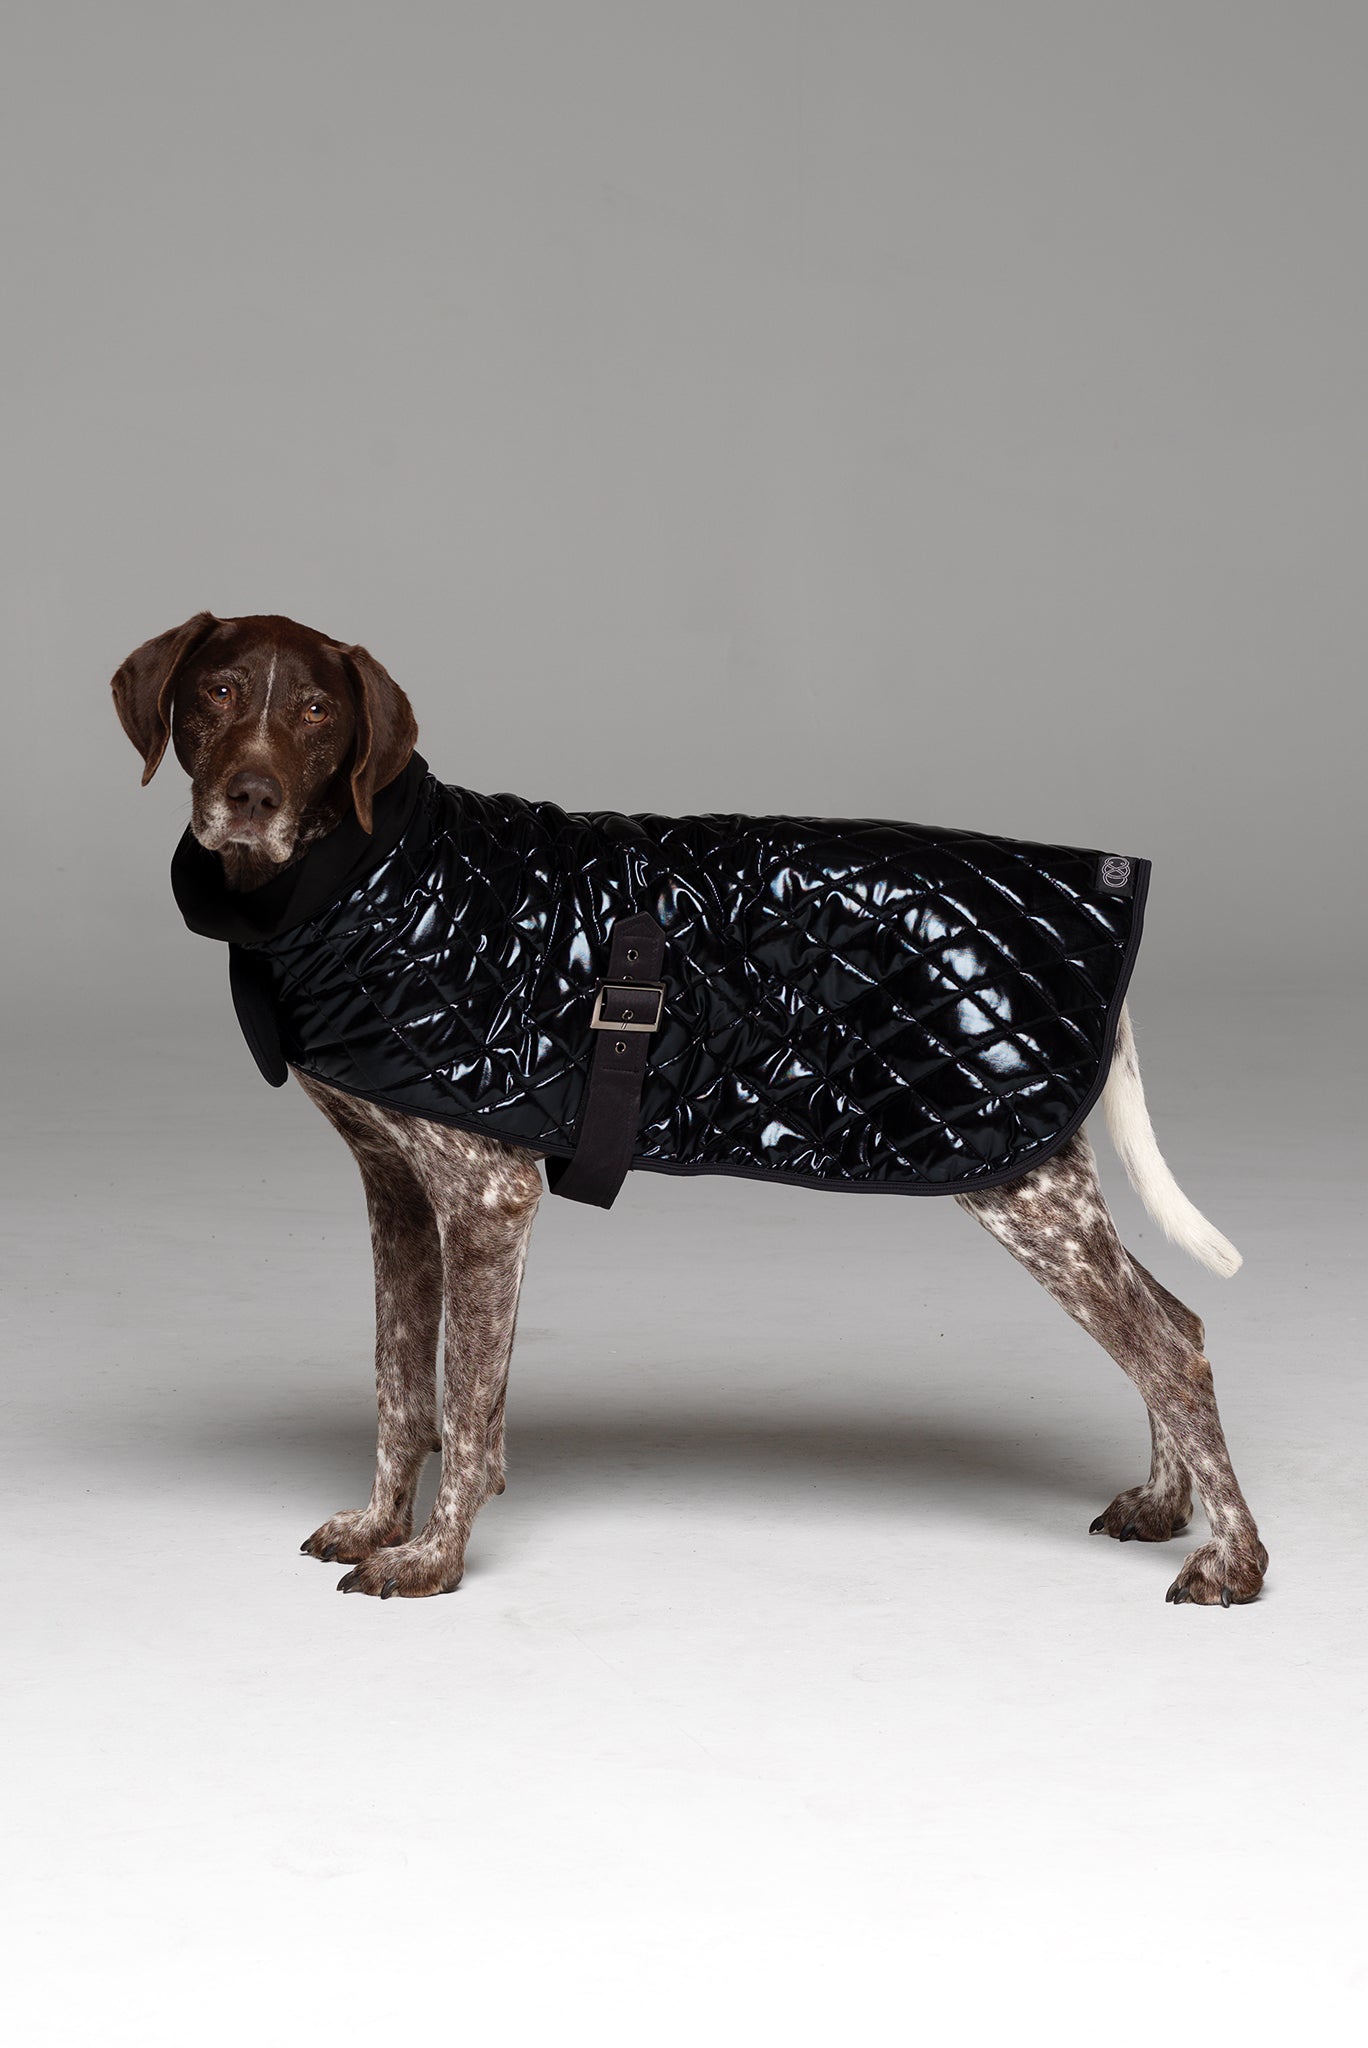 Alpha Dog Coat side of coat showing buckle under belly